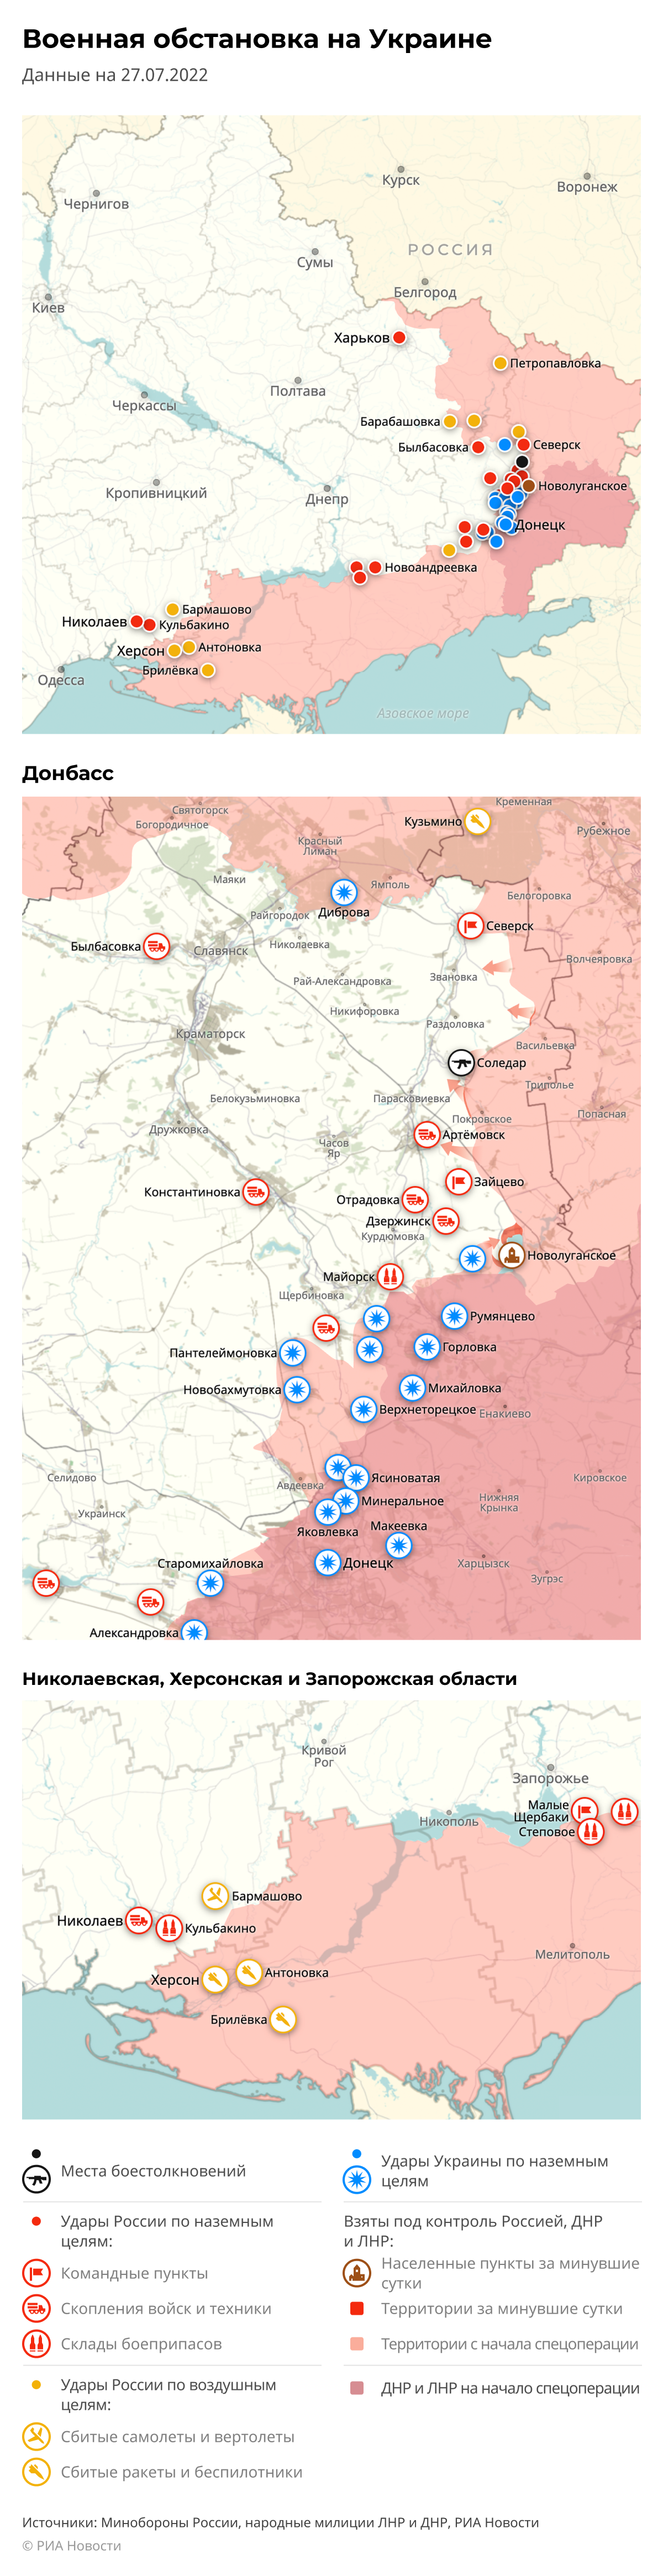 Карта спецоперации Вооруженных сил России на Украине на 27.07.2022